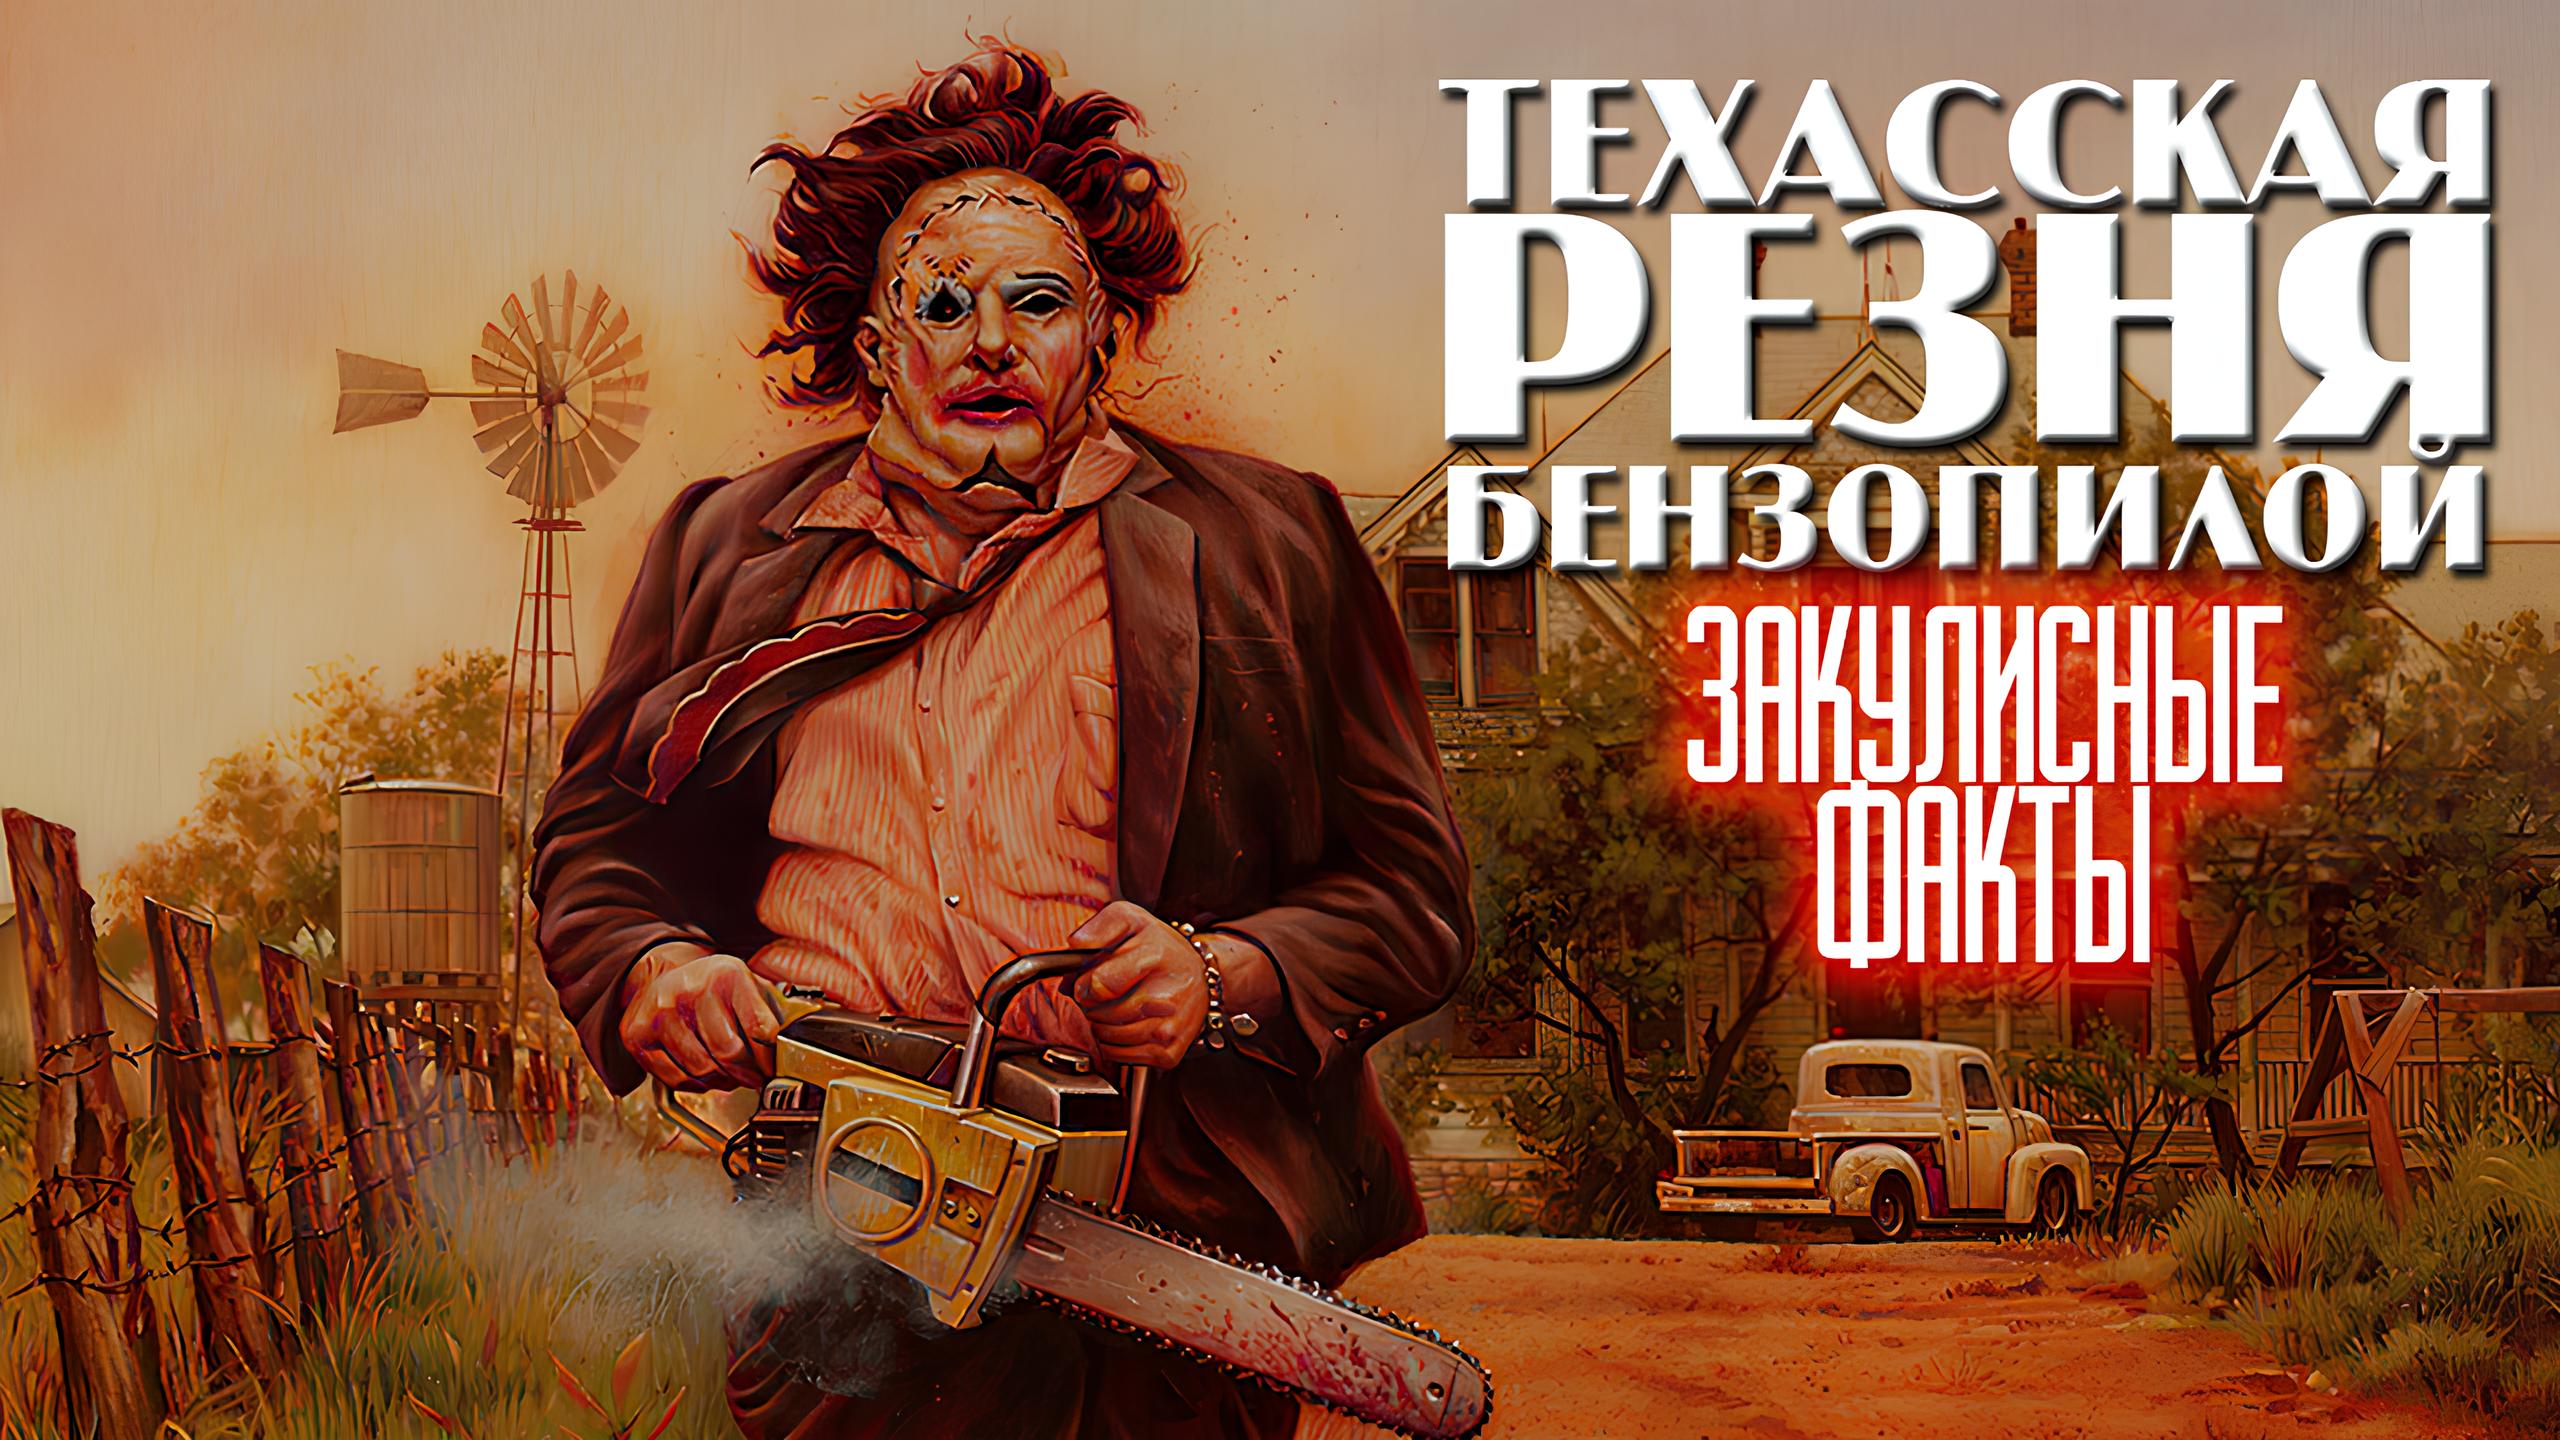 Фильм "Техасская резня бензопилой" (1974): закулисные факты, которые многие зрители упустили из виду